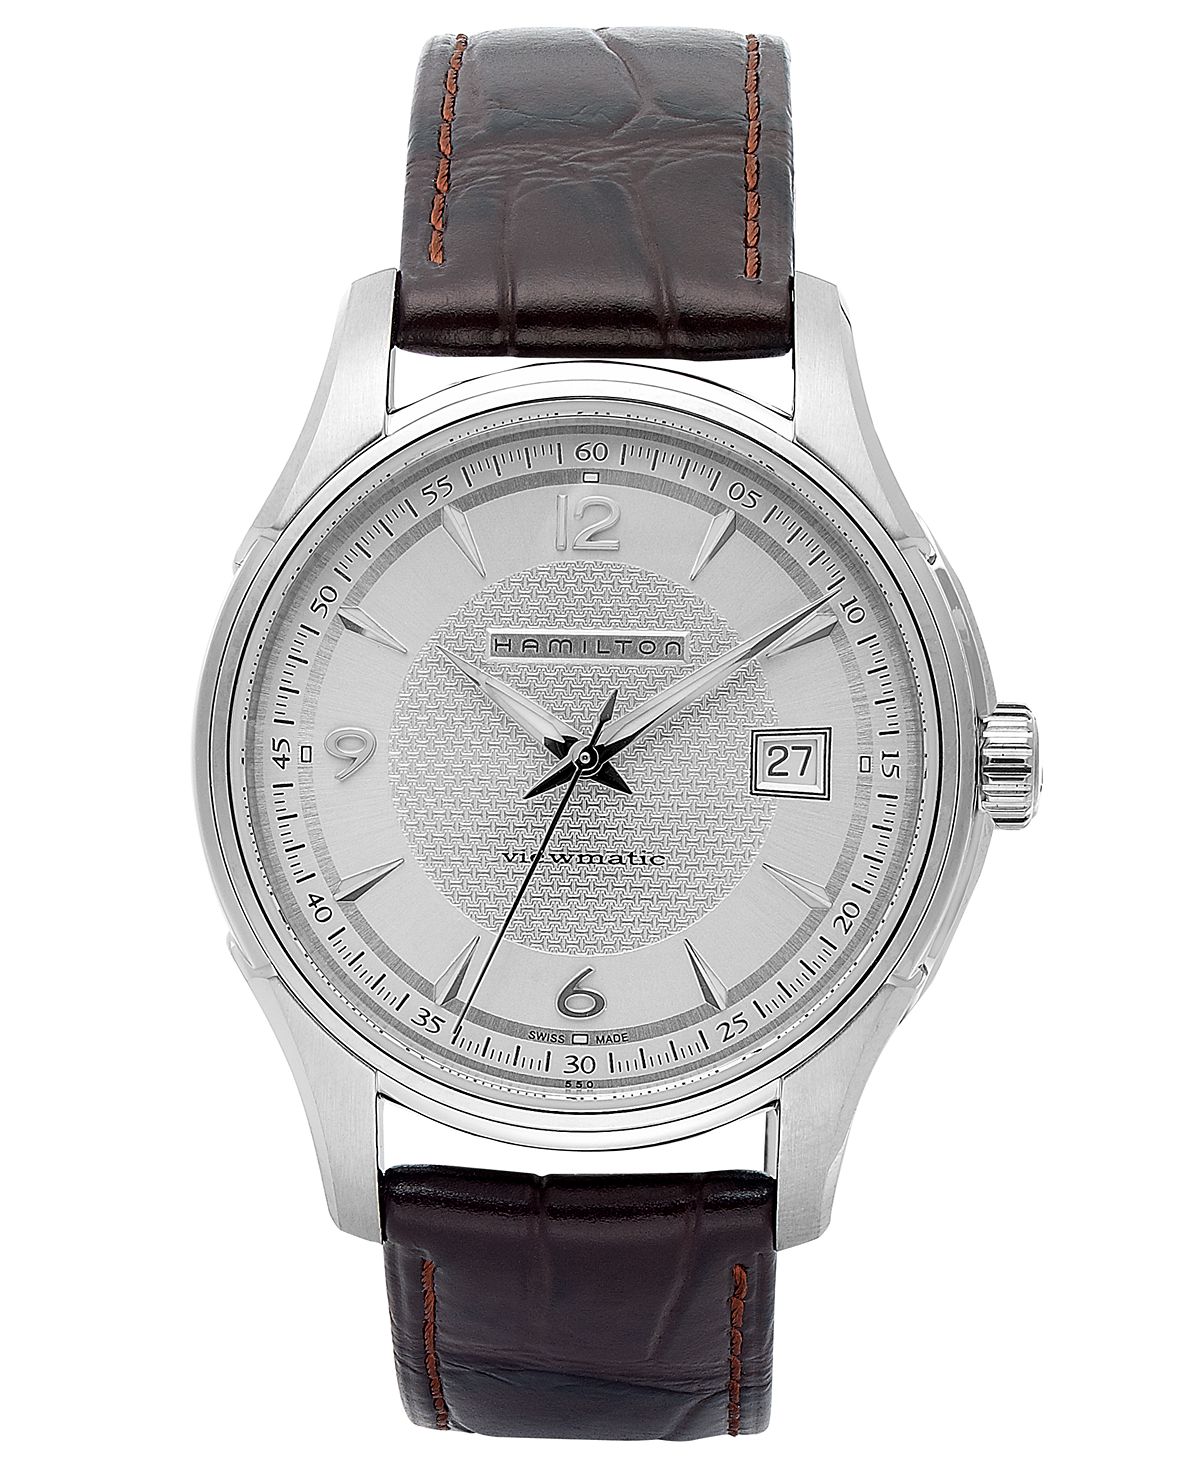 Мужские швейцарские автоматические часы Jazzmaster Viewmatic с коричневым кожаным ремешком 40 мм H32515555 Hamilton наручные часы hamilton jazzmaster h32475140